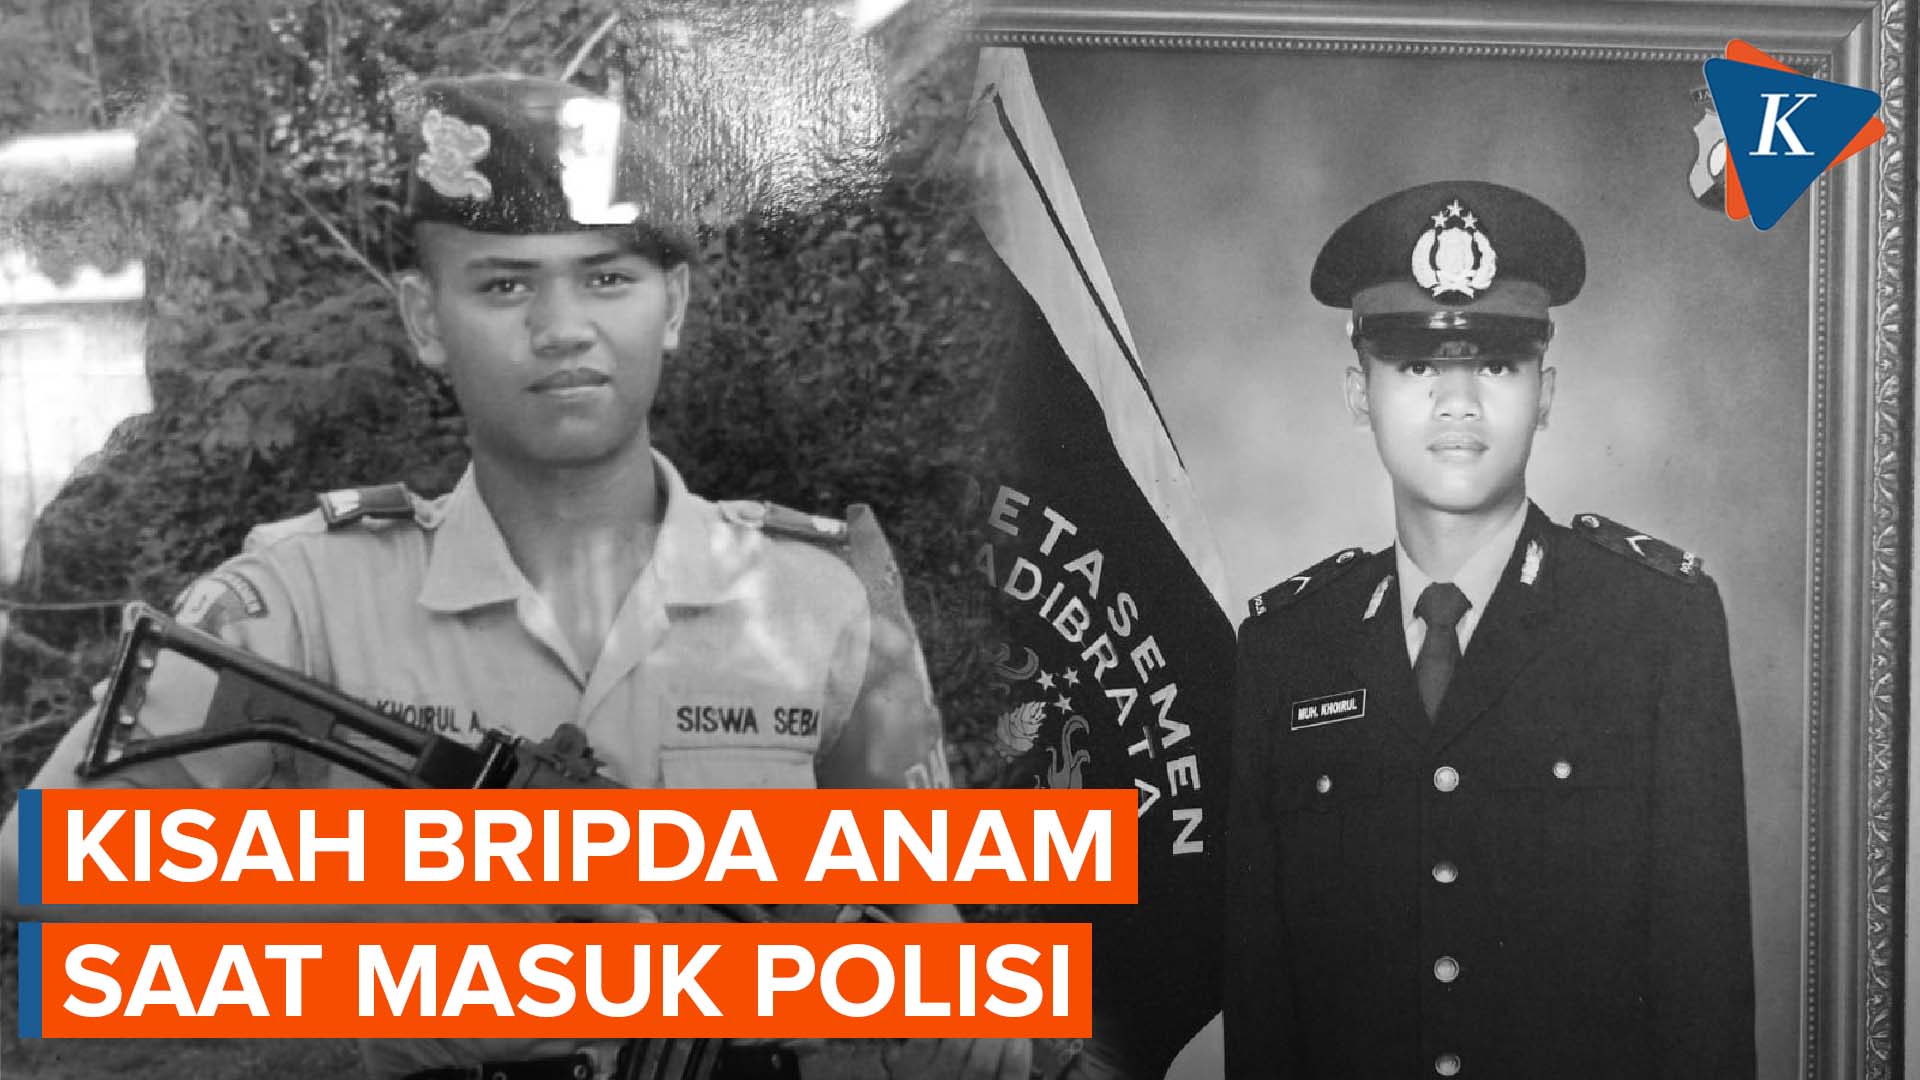 Sosok Bripda Khoirul Anam, Prajurit yang Gugur dalam Kecelakaan Helikopter Polri